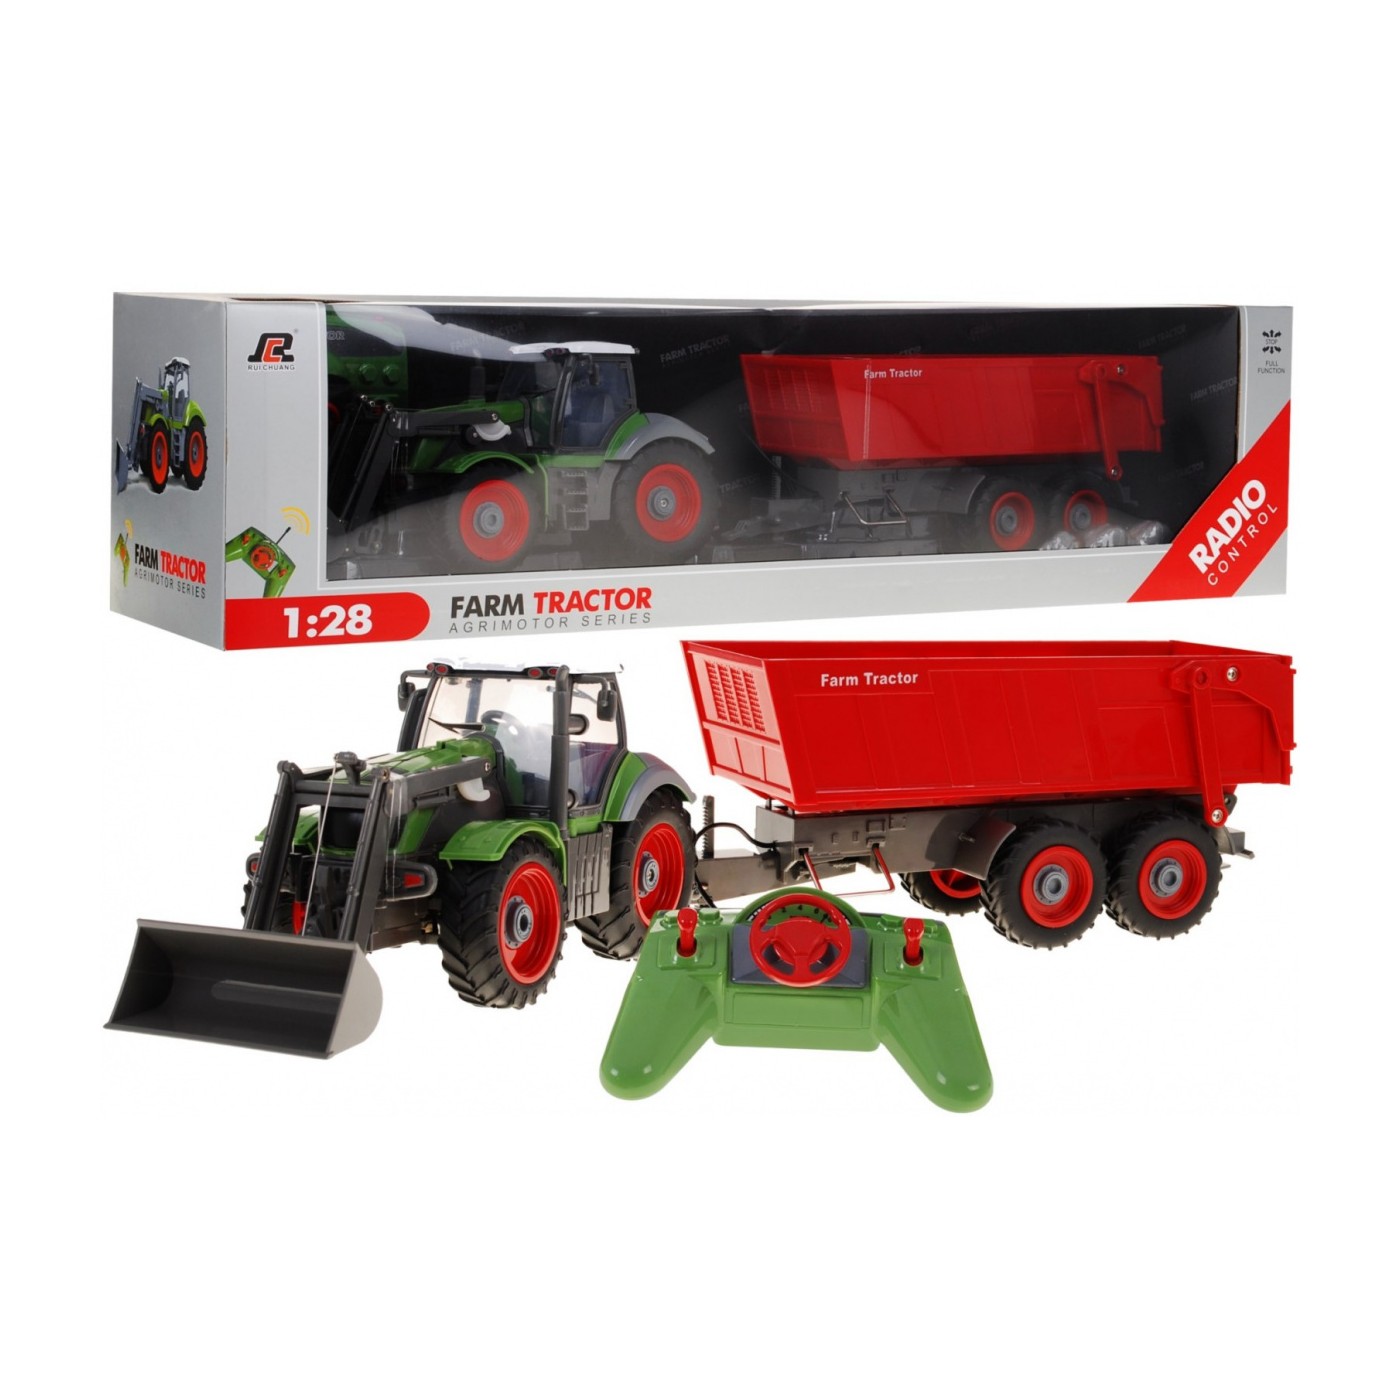 Traktor z koparką i przyczepą dla dzieci 3+ Zdalnie sterowany + Ruchome elementy Zielono-czerwony